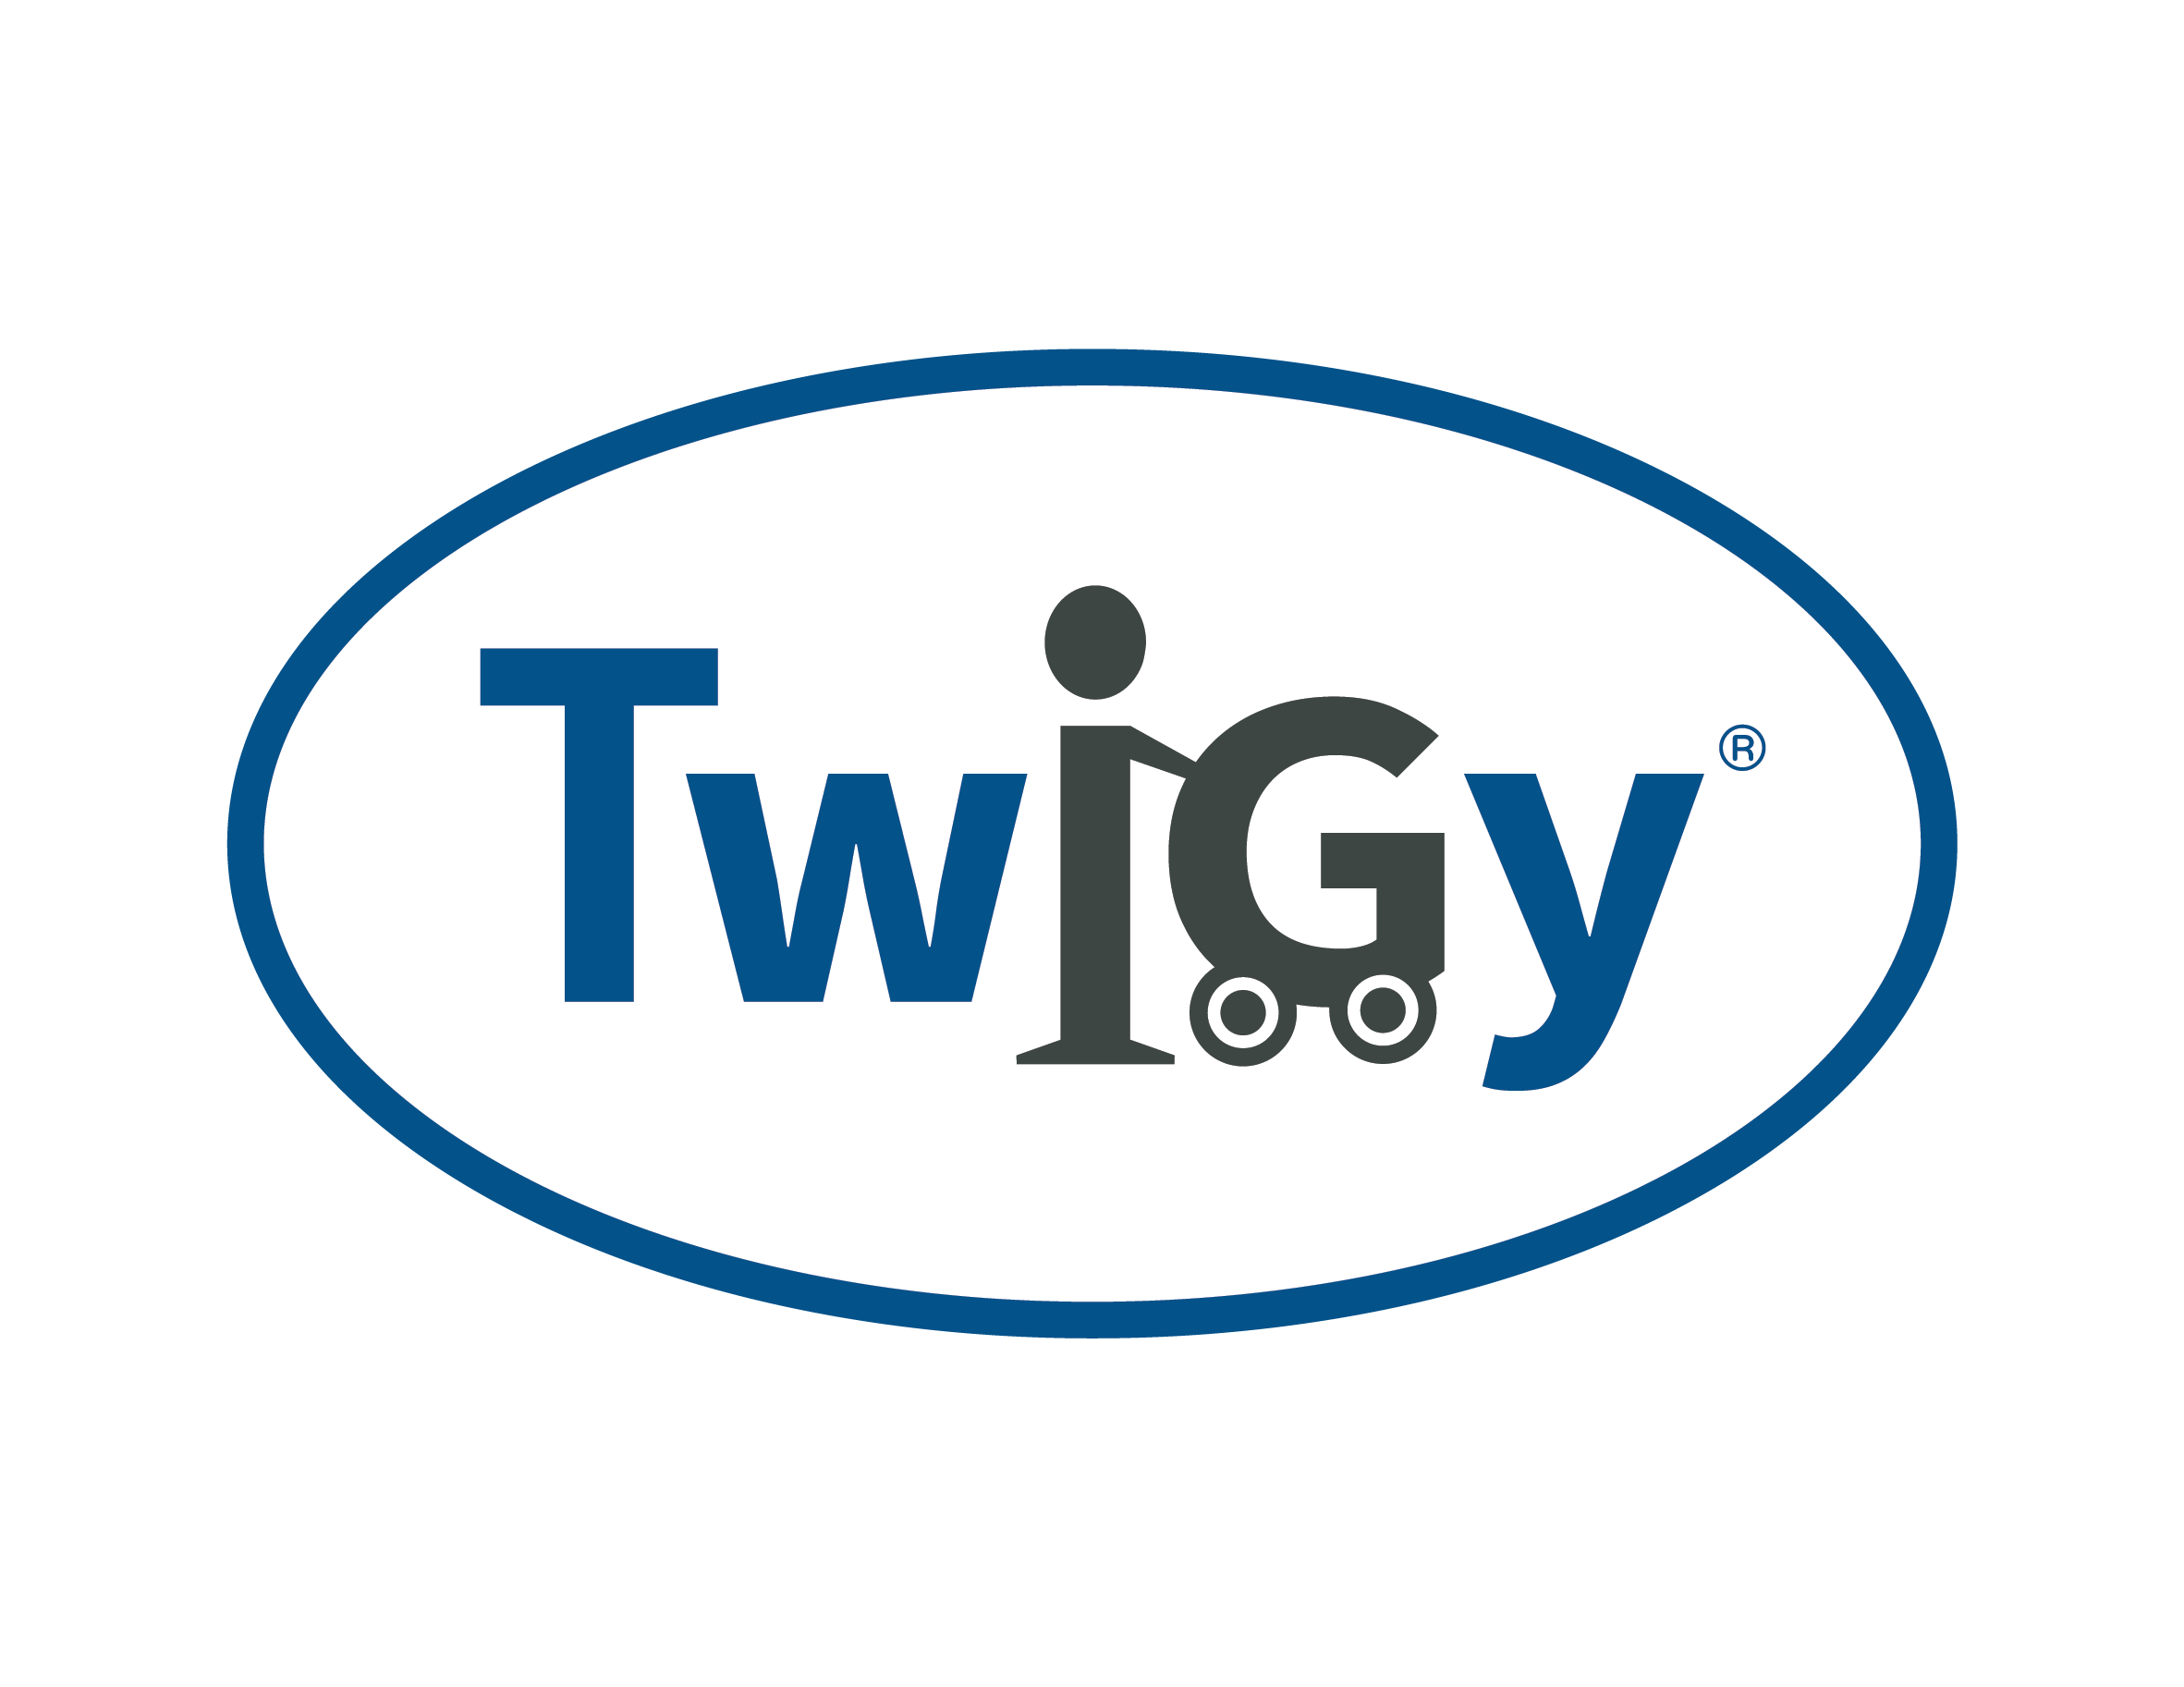 אופניים לילדים טוויגי רדליקון -™Twigy Redliccon